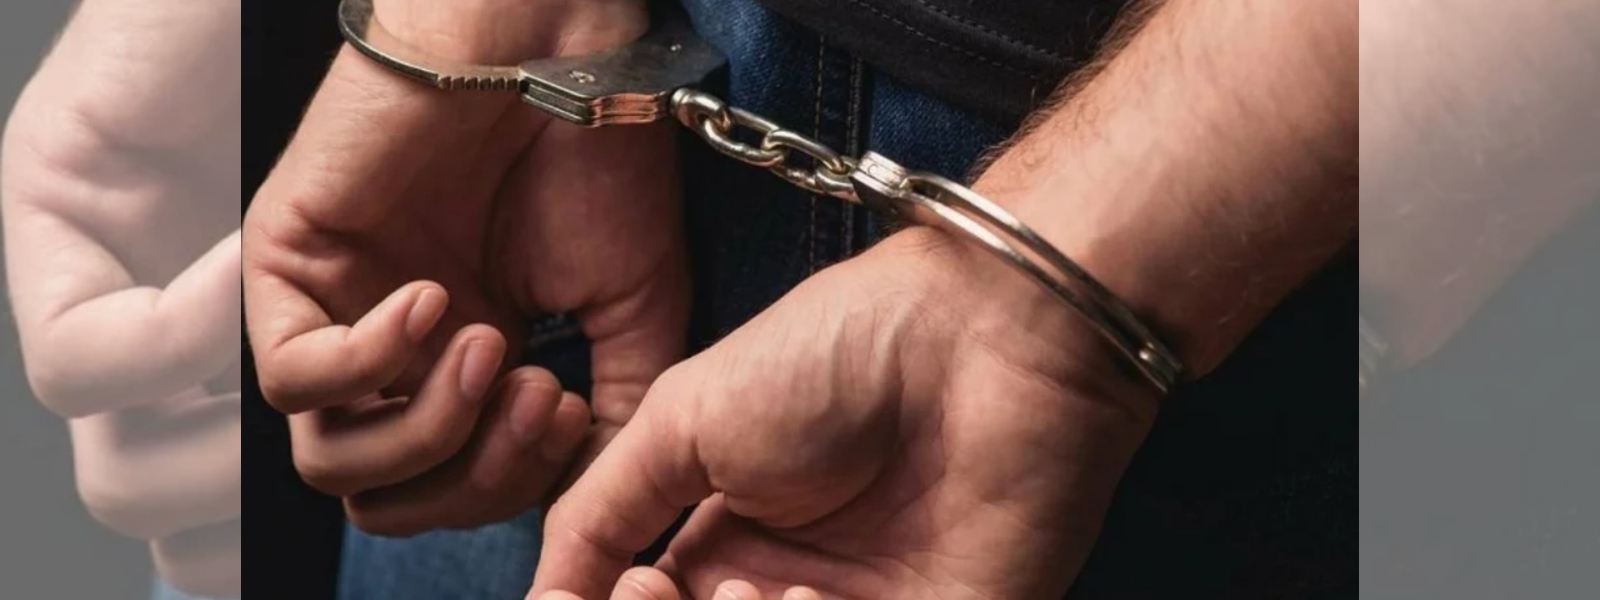 15 arrested for smuggling drugs into Kalutara Prison